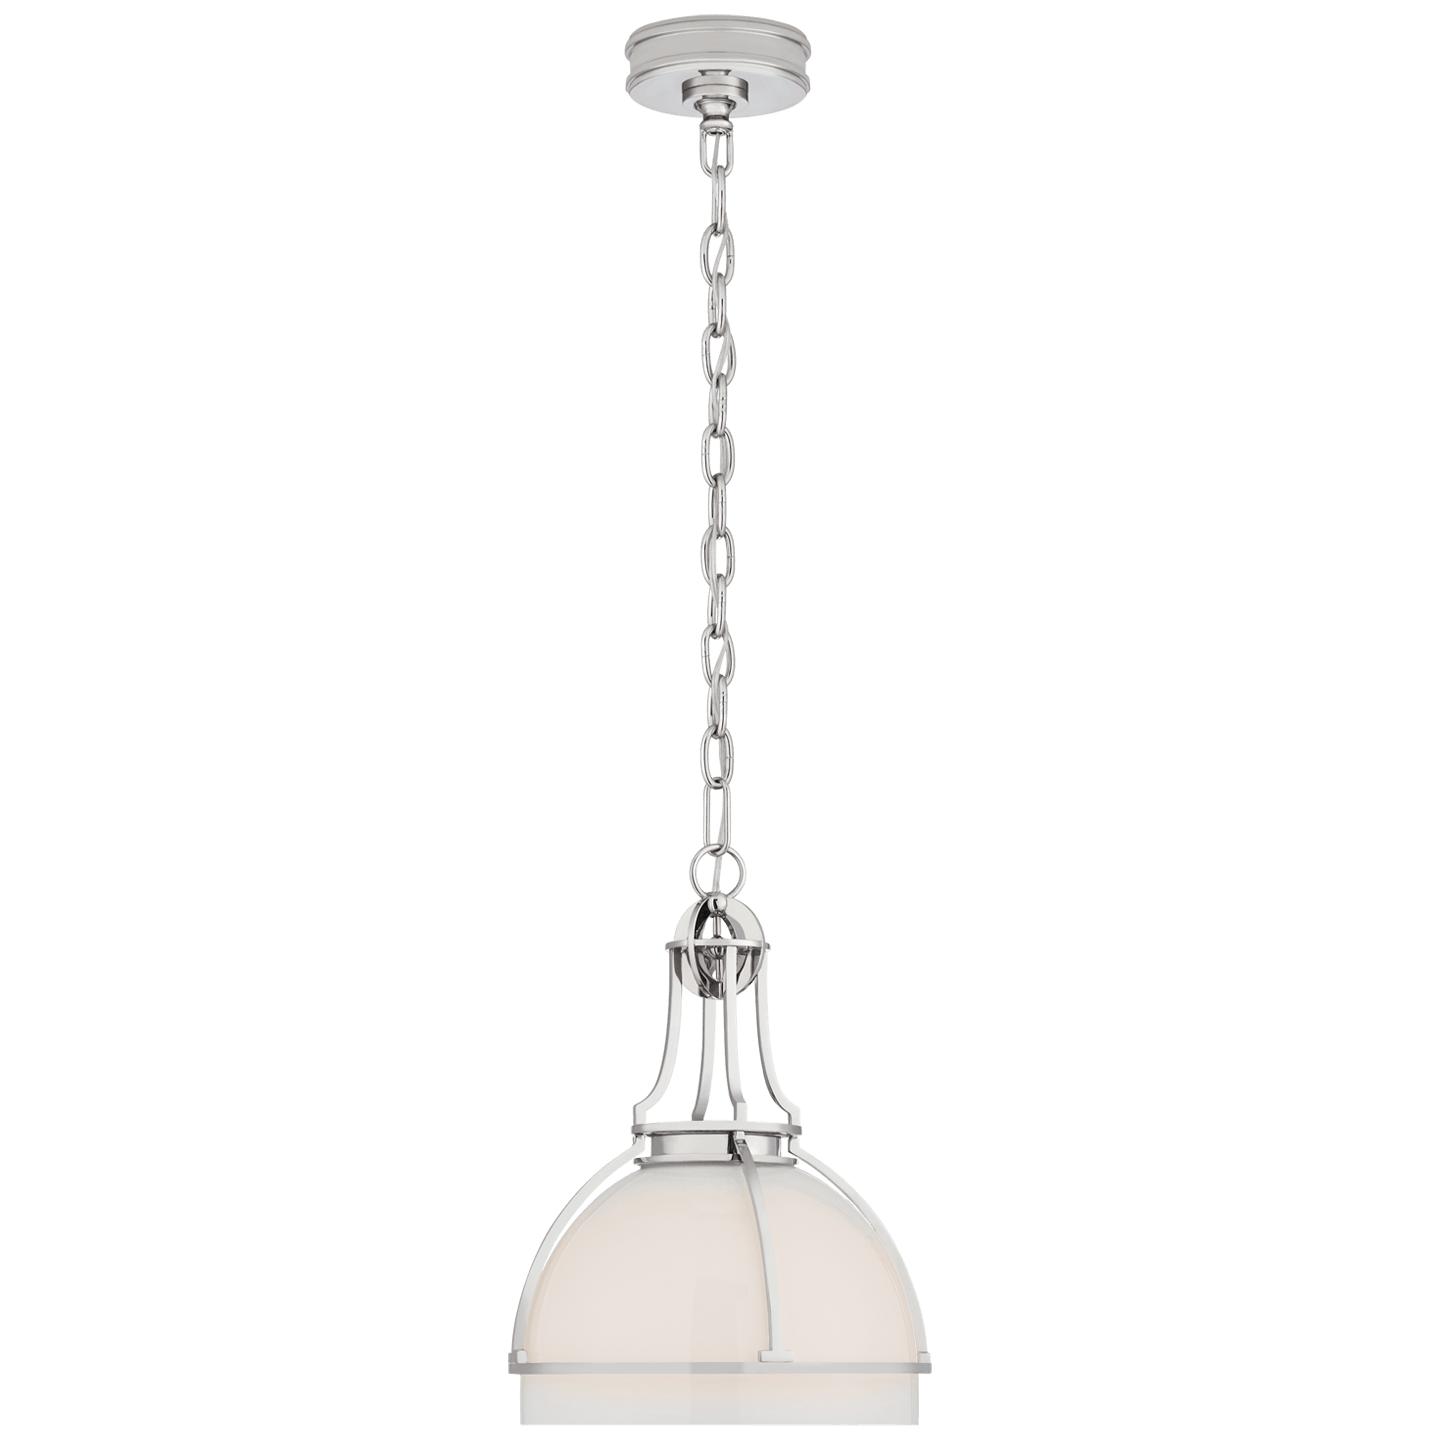 Купить Подвесной светильник Gracie Medium Dome Pendant в интернет-магазине roooms.ru